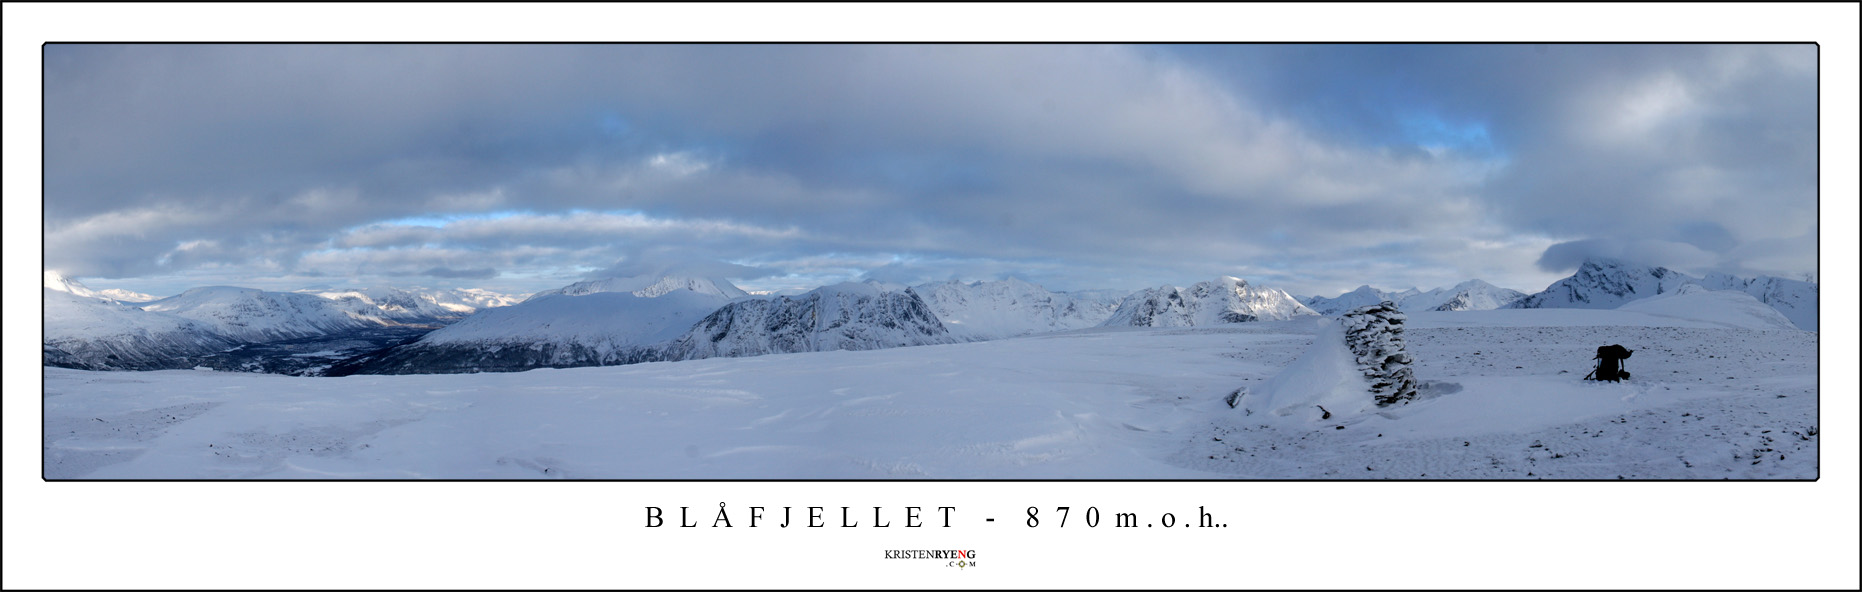 Panorama-Blaafjellet.jpg - Utsikt fra Blåfjellet (870 moh). Dato : 28.02.09